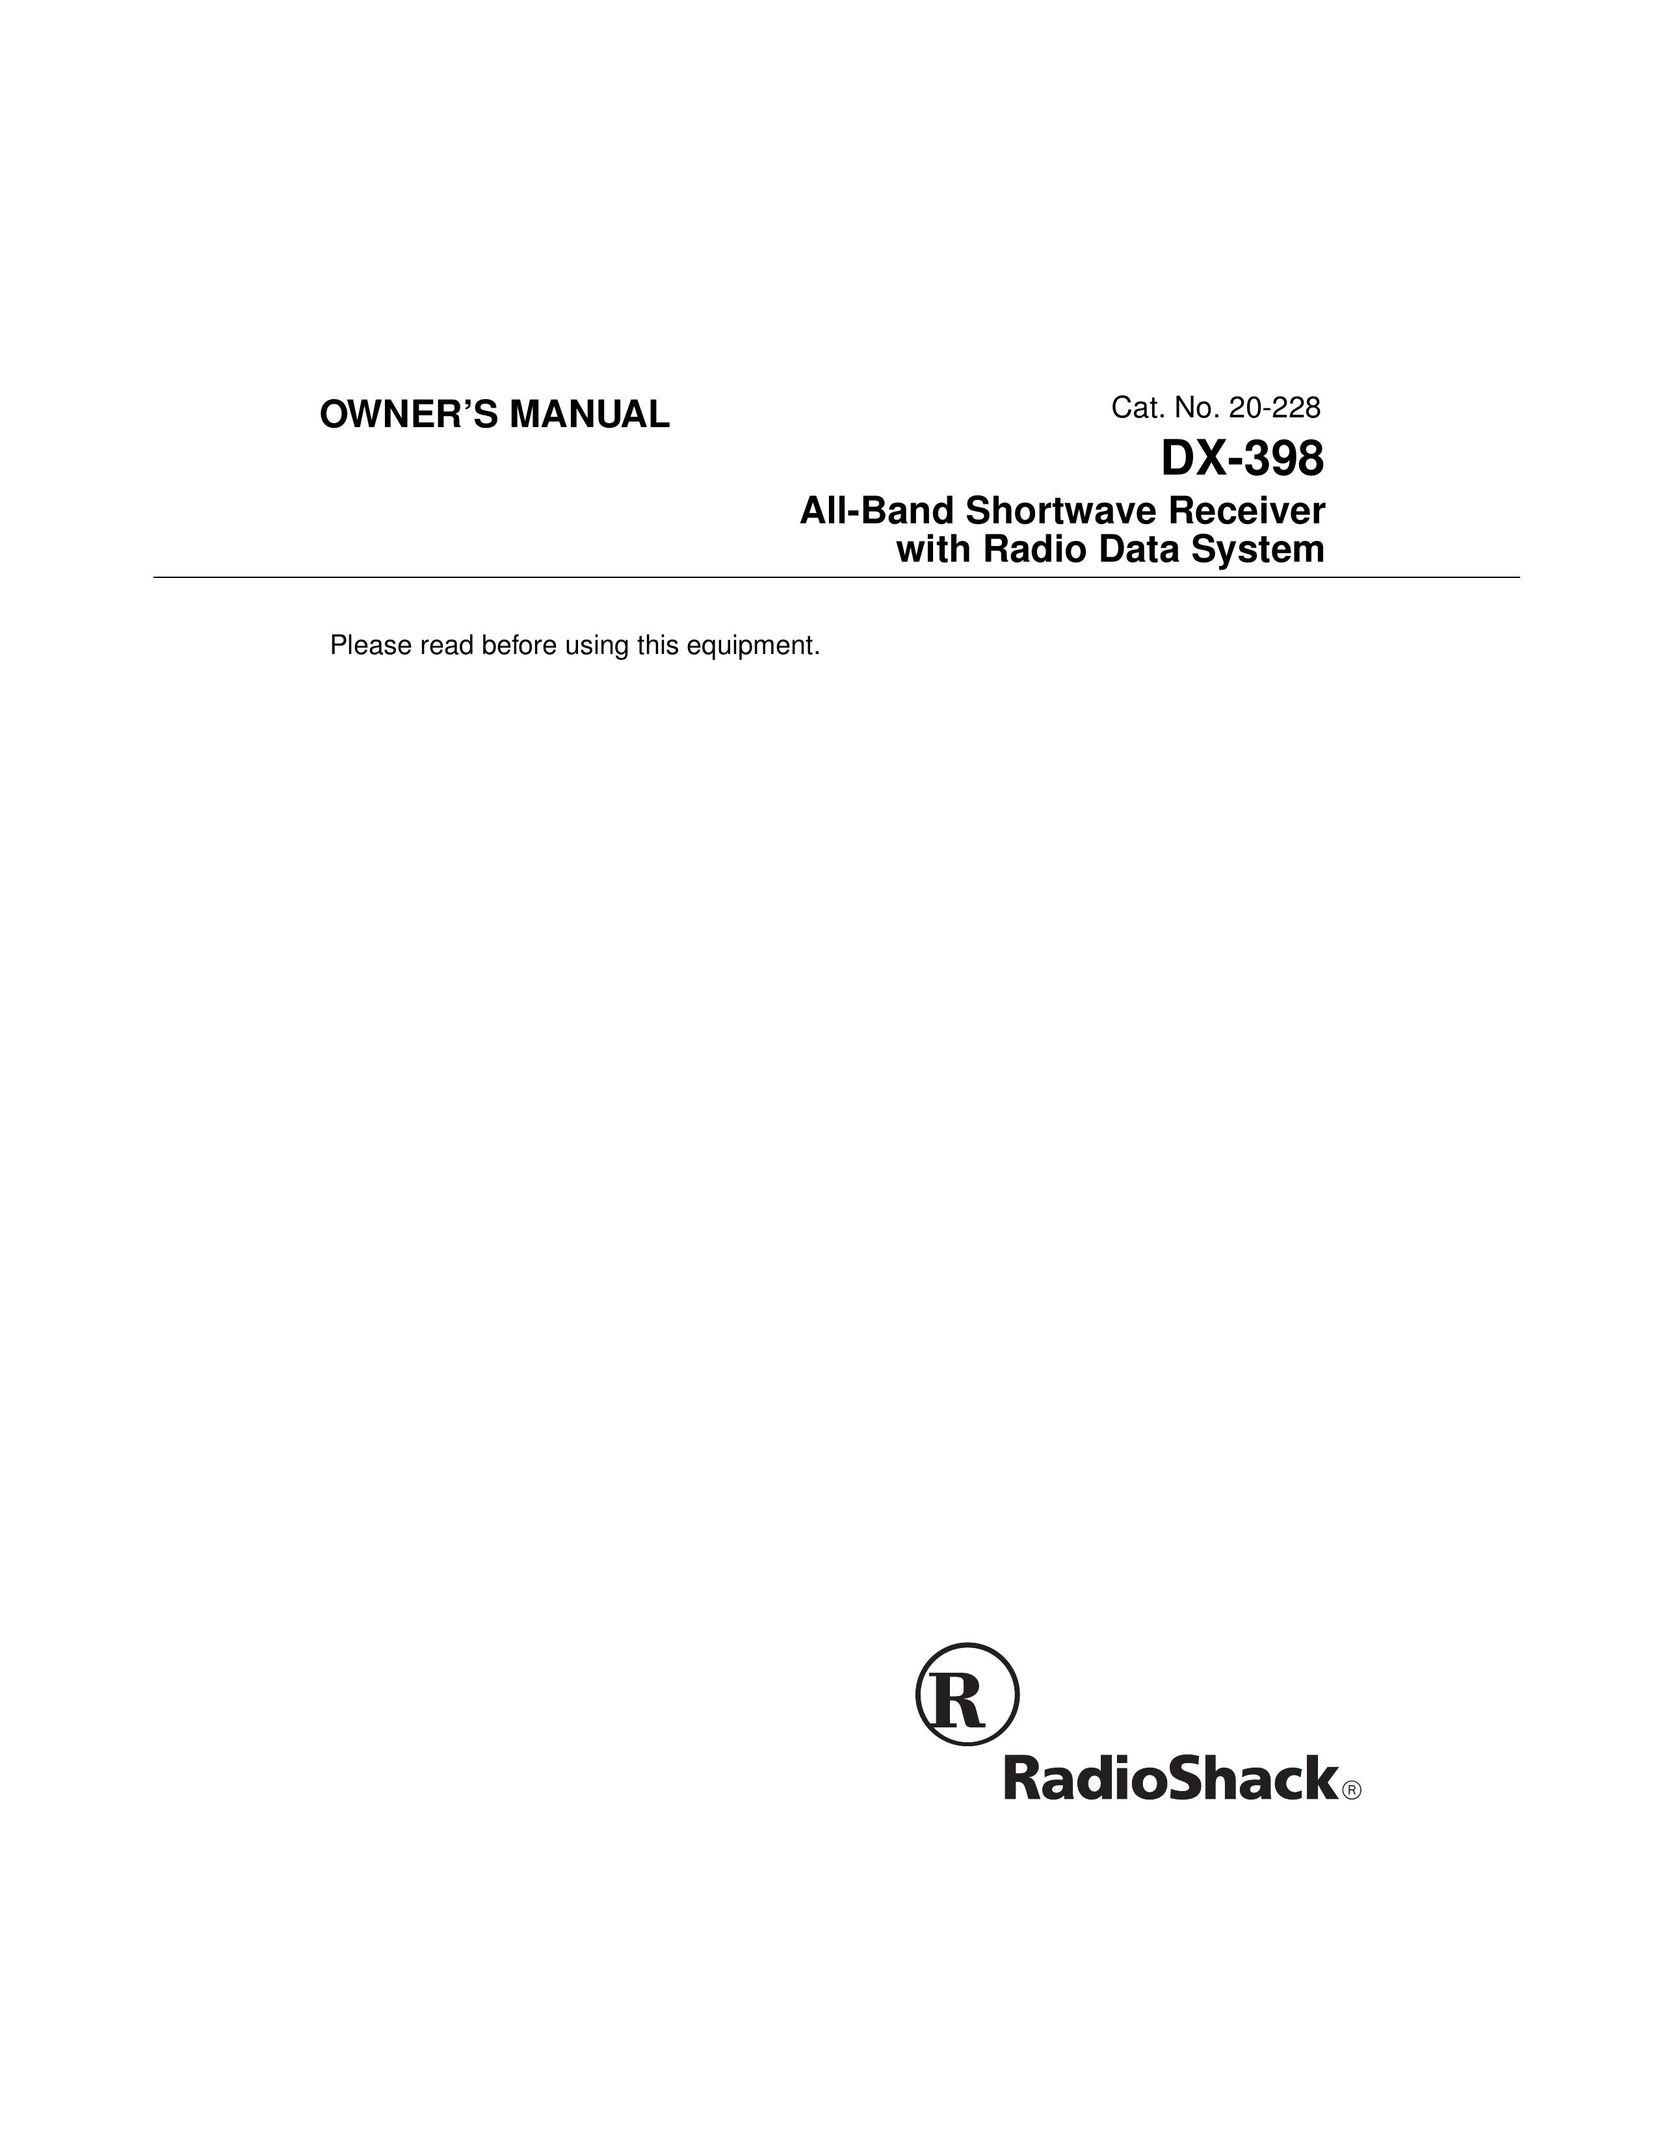 Radio Shack DX-398 Radio User Manual